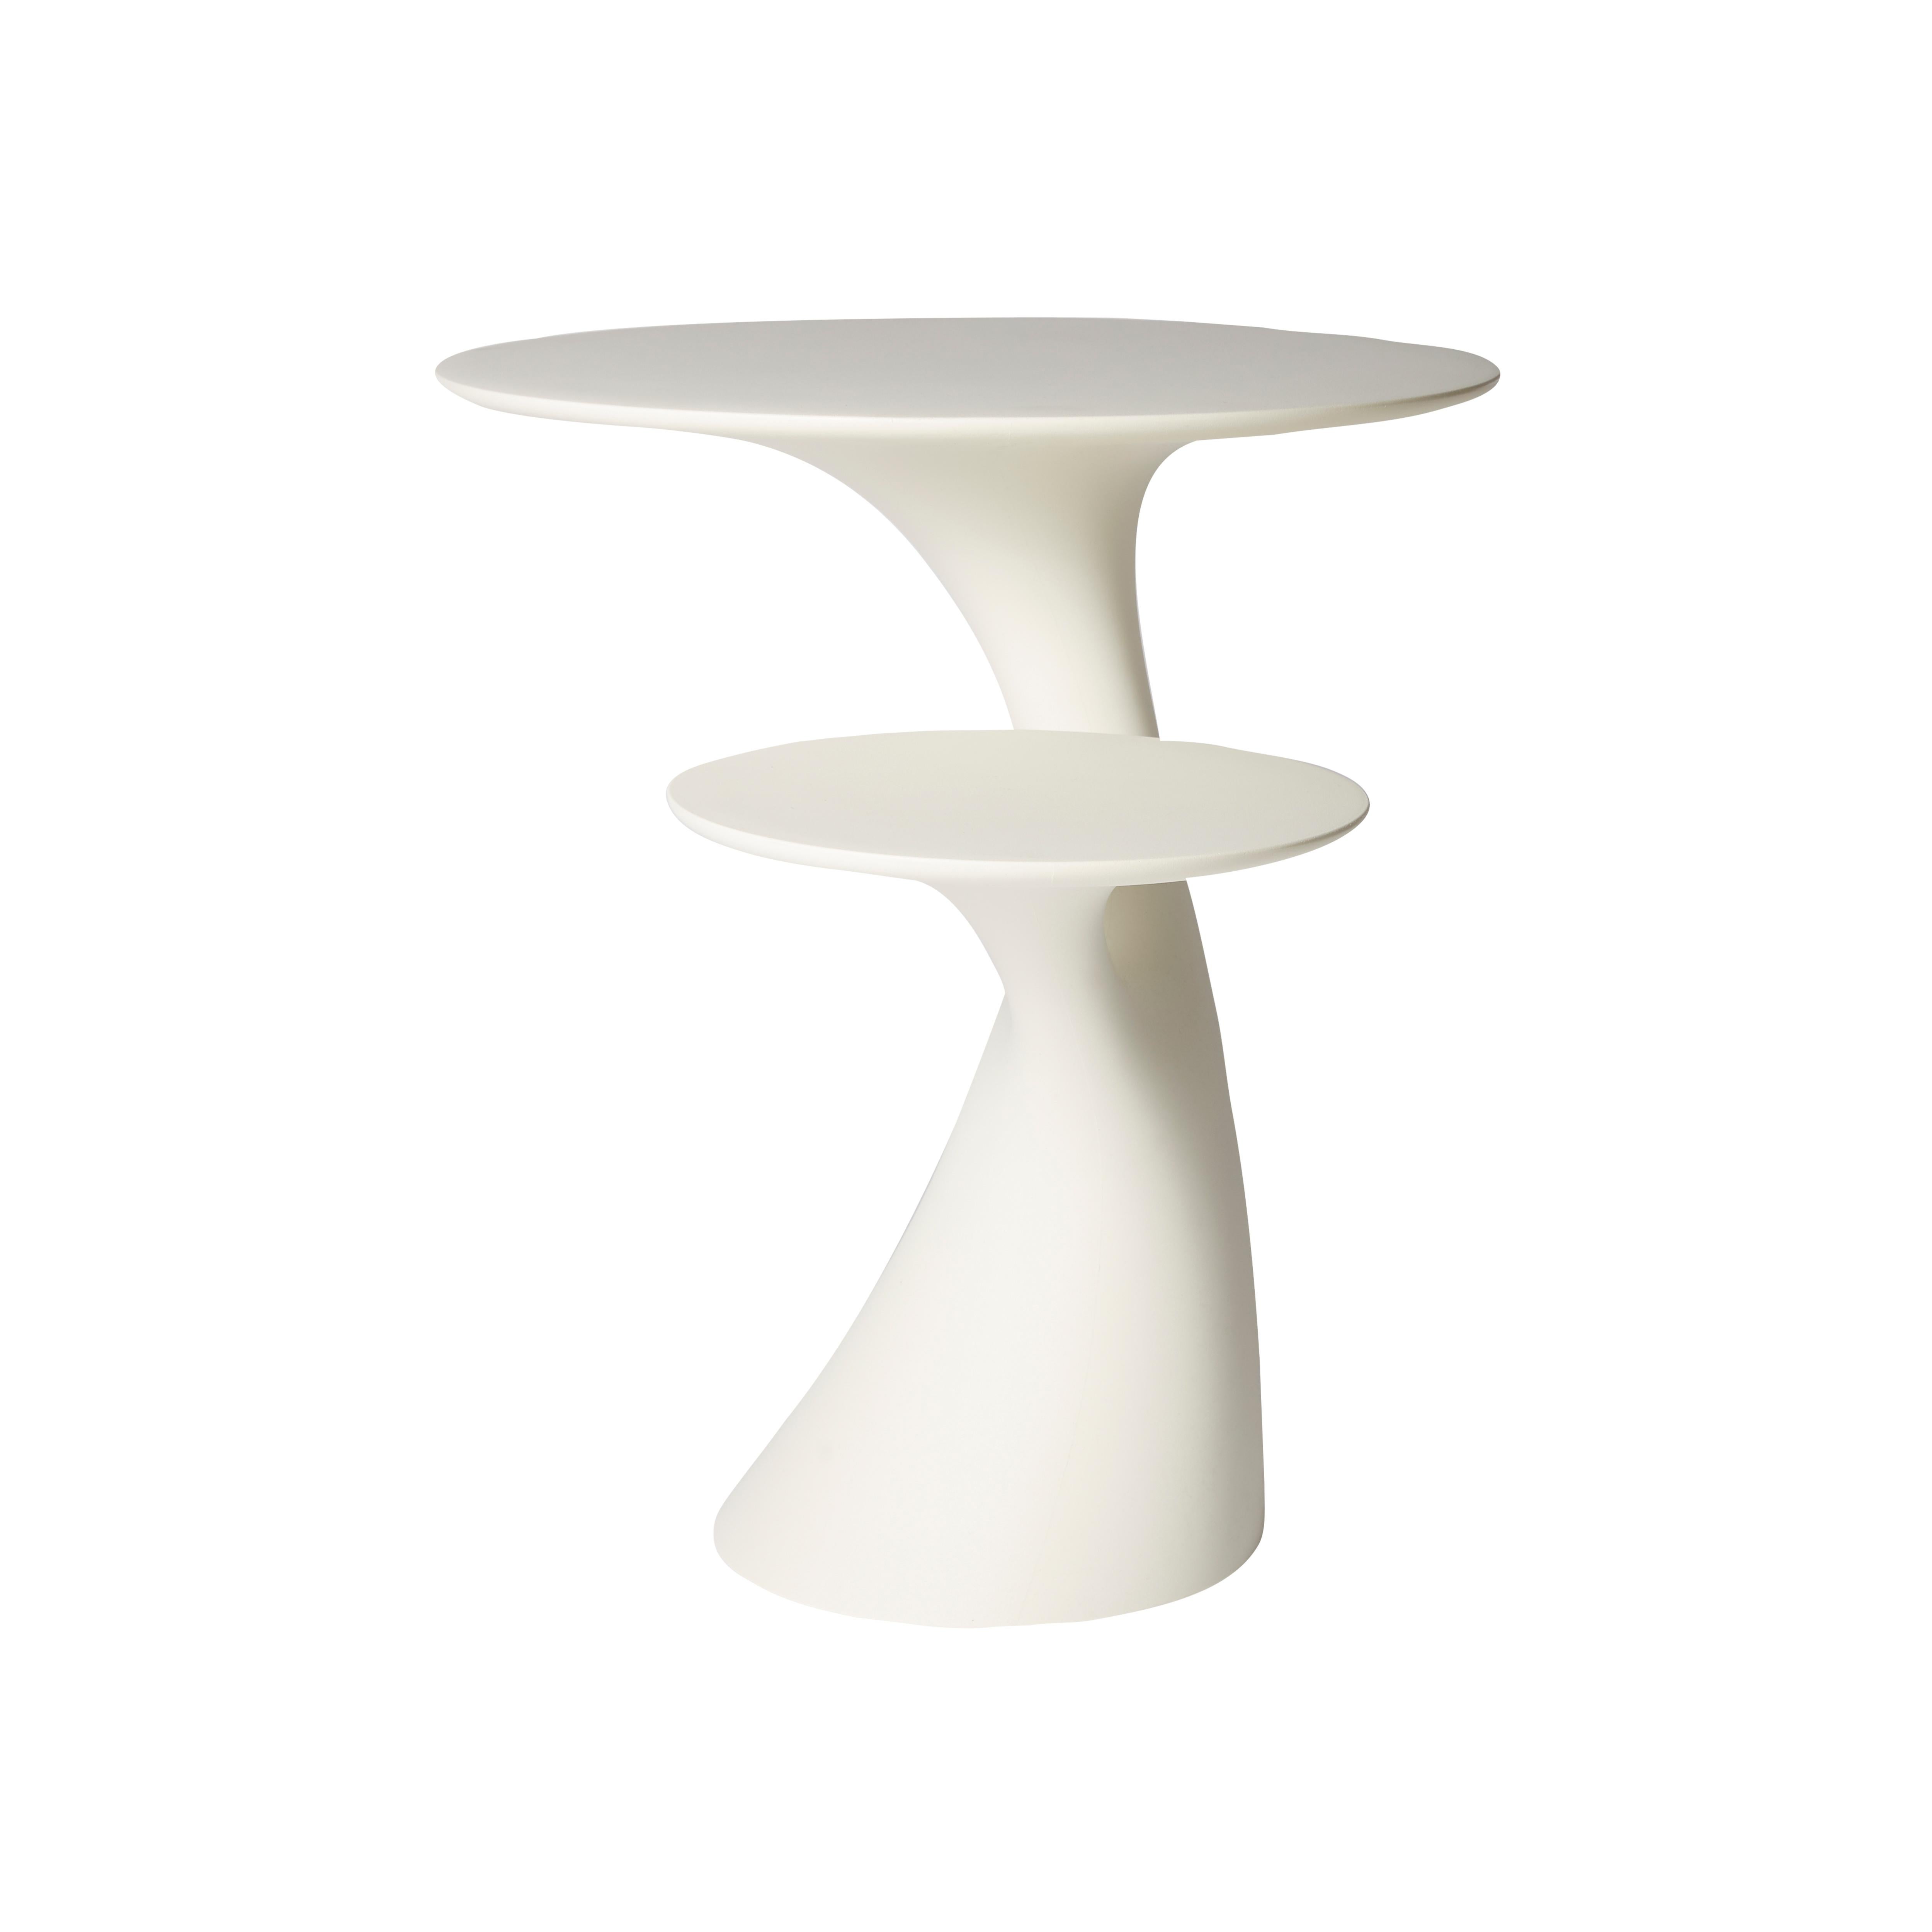 En vente : White Table d'appoint moderne en plastique blanc, gris, vert, rose ou en forme d'arbre par Stefano Giovannoni 2